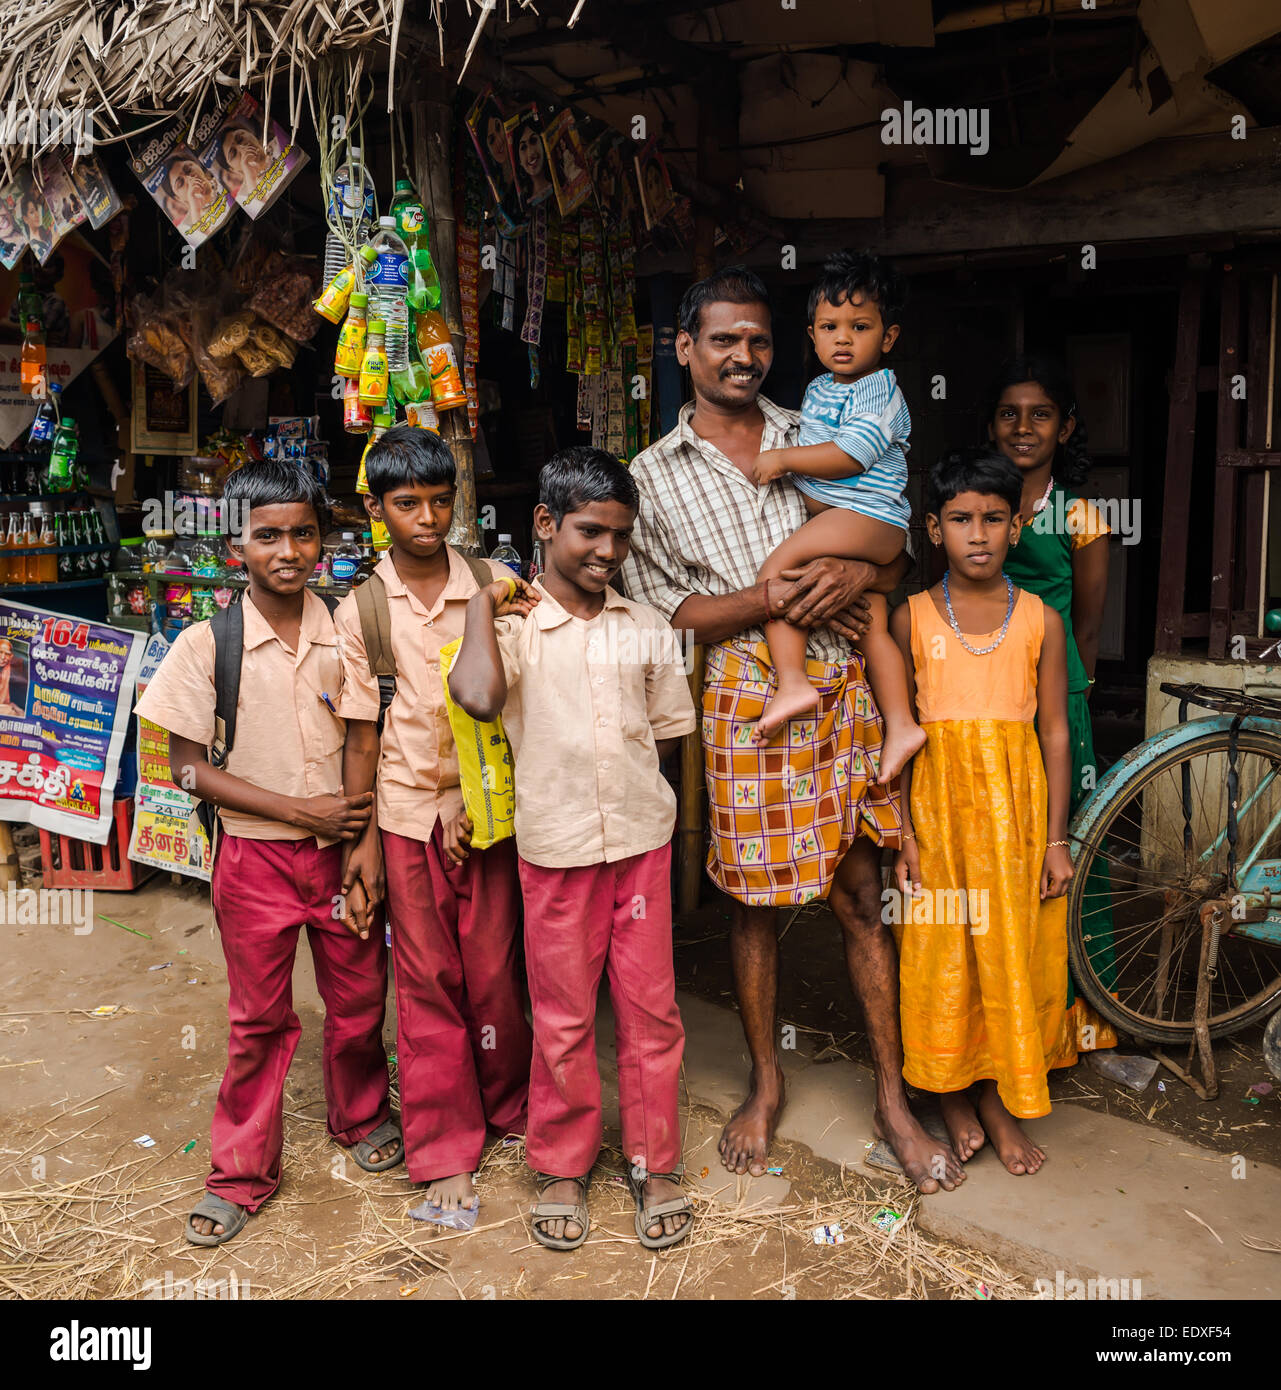 THANJAVUR, India - 13 febbraio: una scuola non identificato i bambini in uniforme e l'uomo con il bambino in piedi vicino al negozio di rurale. L'India, Foto Stock